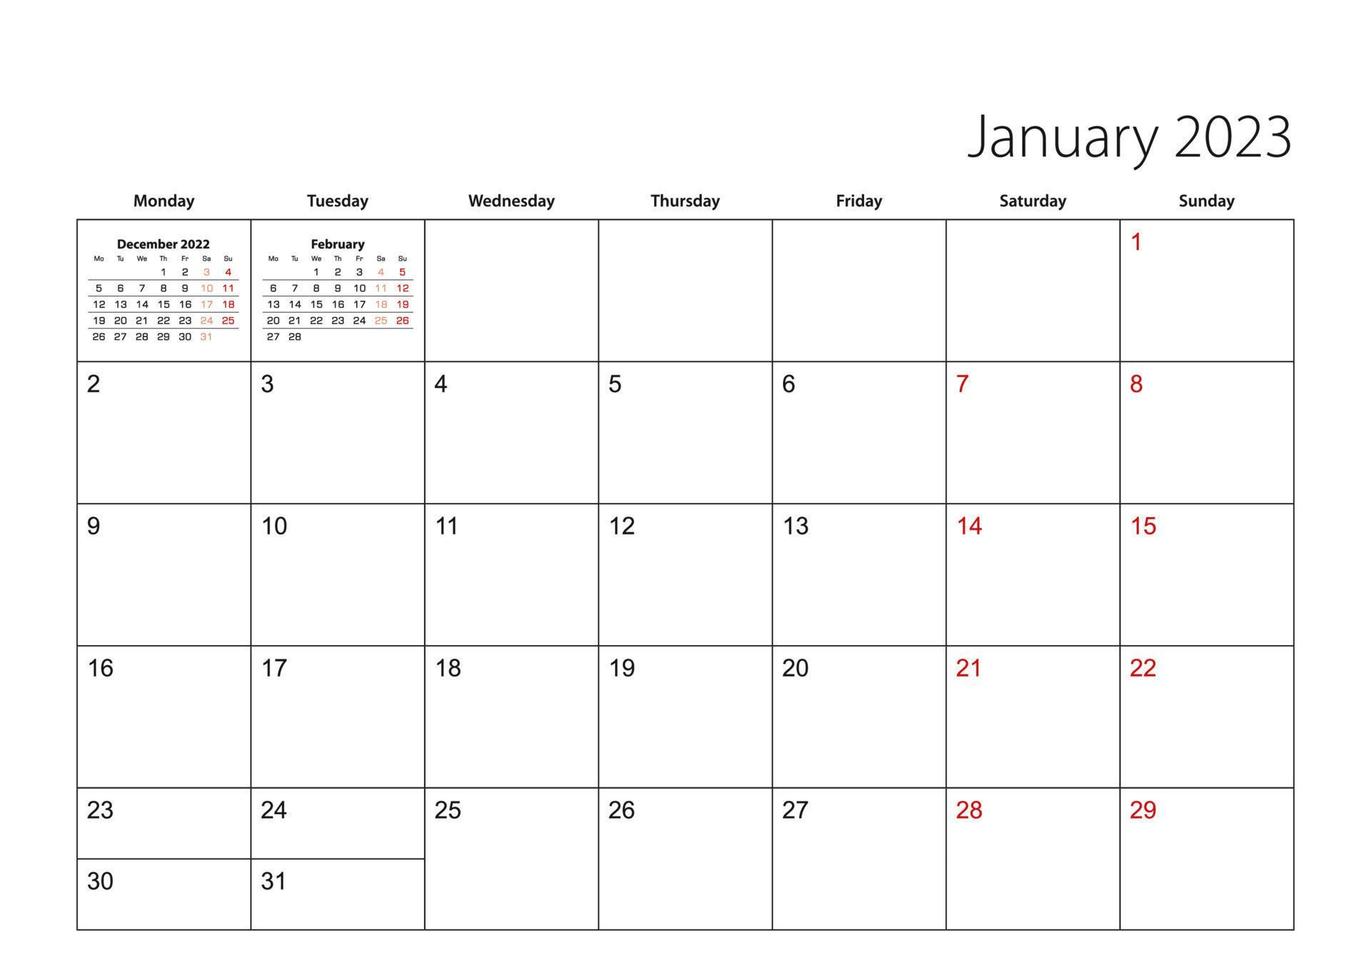 januari 2023 enkel kalender planerare, vecka börjar från måndag. vektor